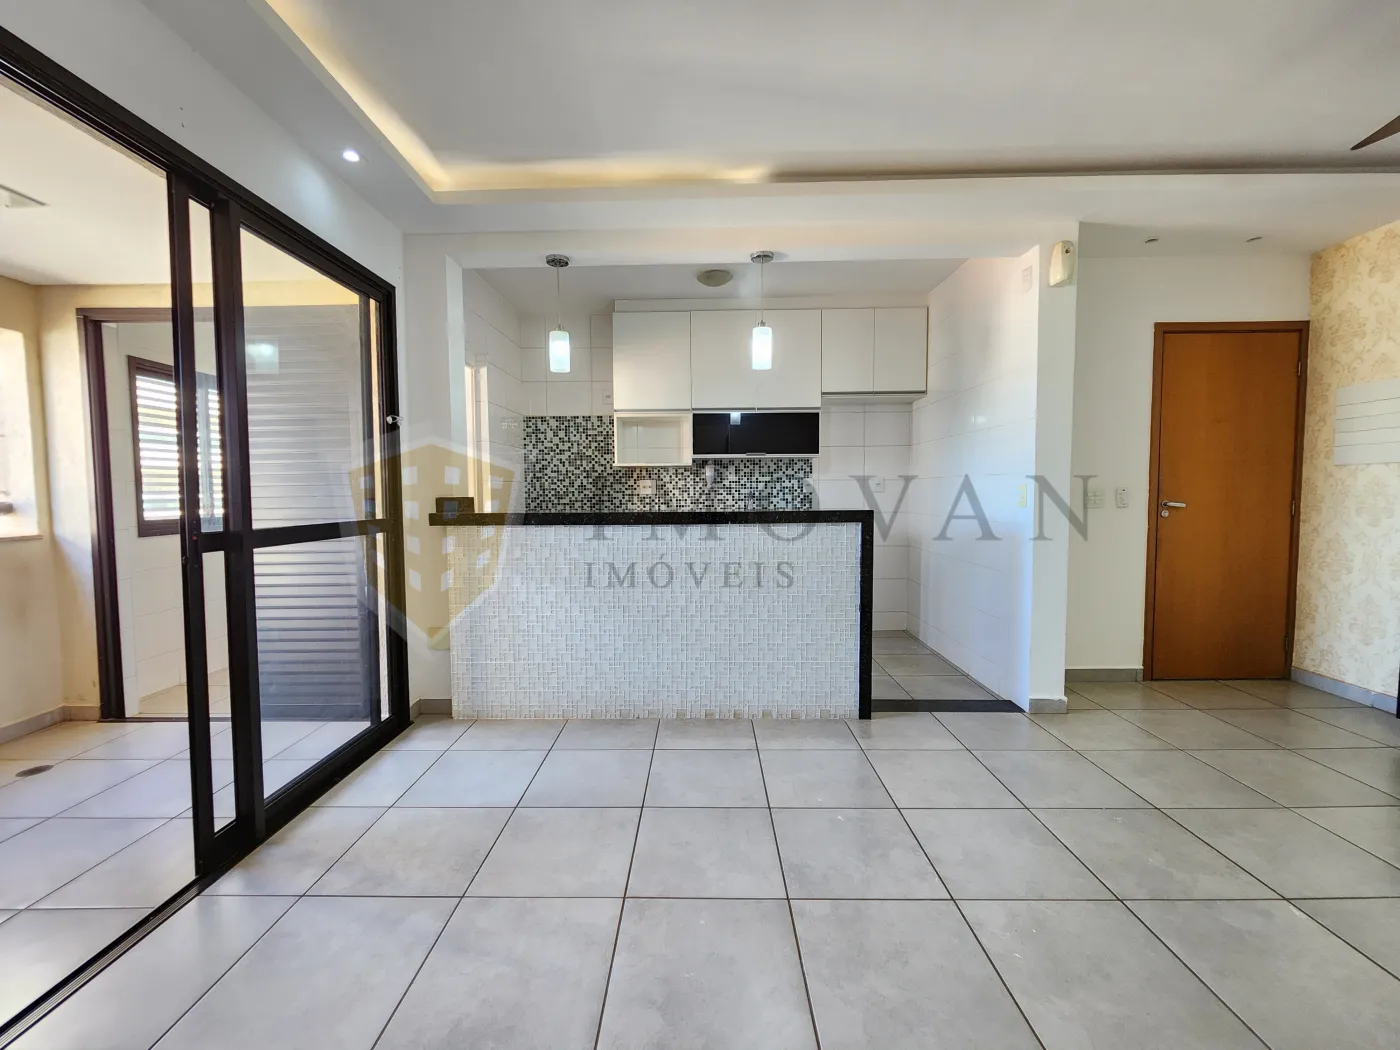 Comprar Apartamento / Padrão em Ribeirão Preto R$ 375.000,00 - Foto 8